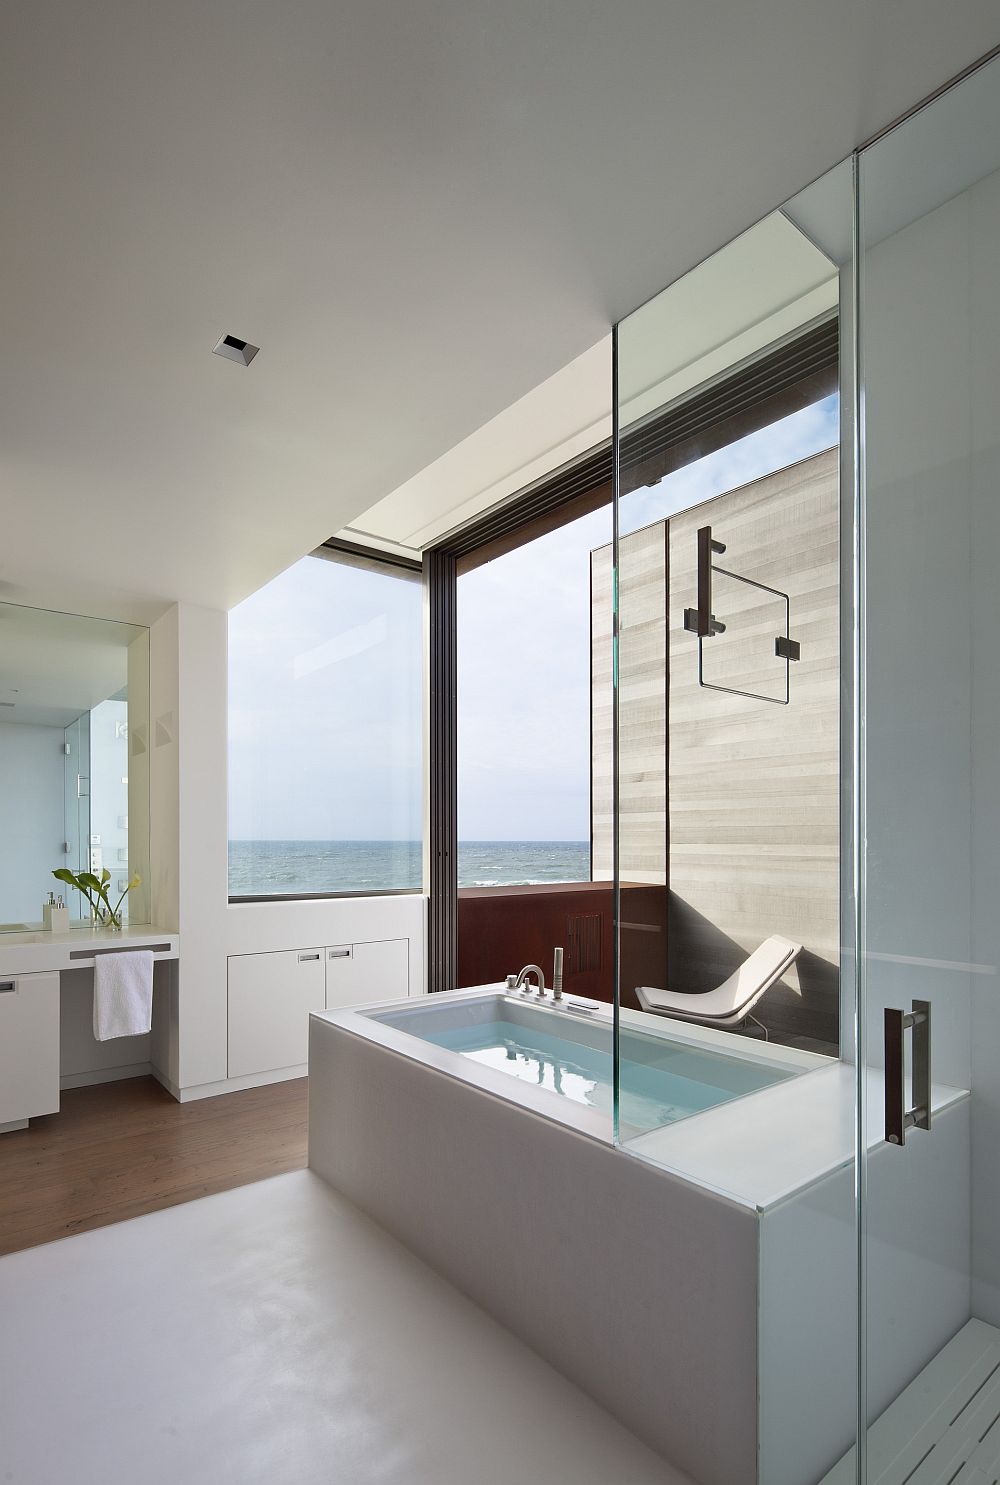 Дизайн интерьера ванной комнаты в белой гамме